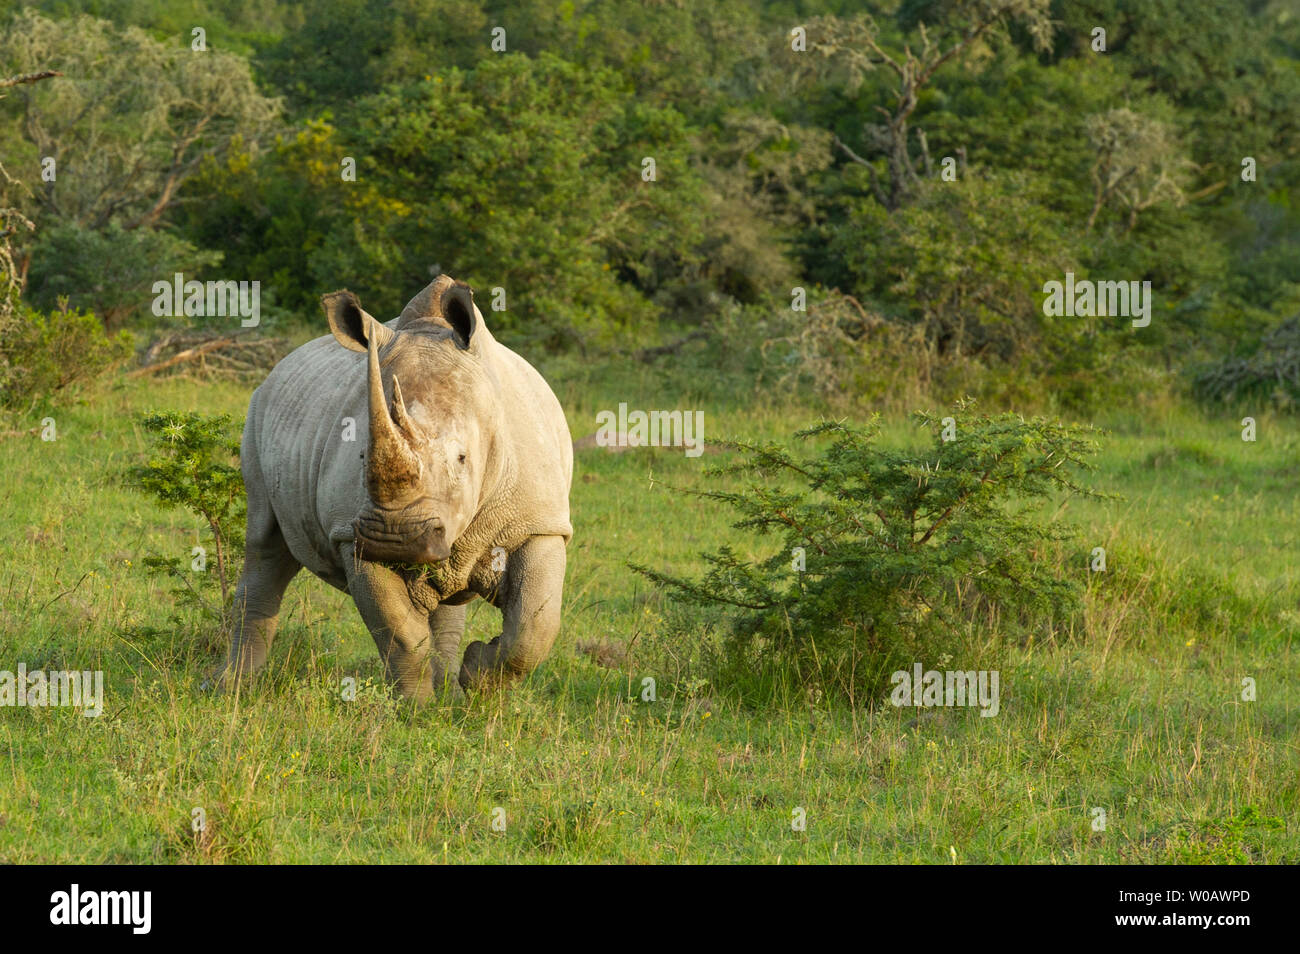 White rhinoceros, Ceratotherium simum, Amakhala Game Reserve, South Africa Stock Photo